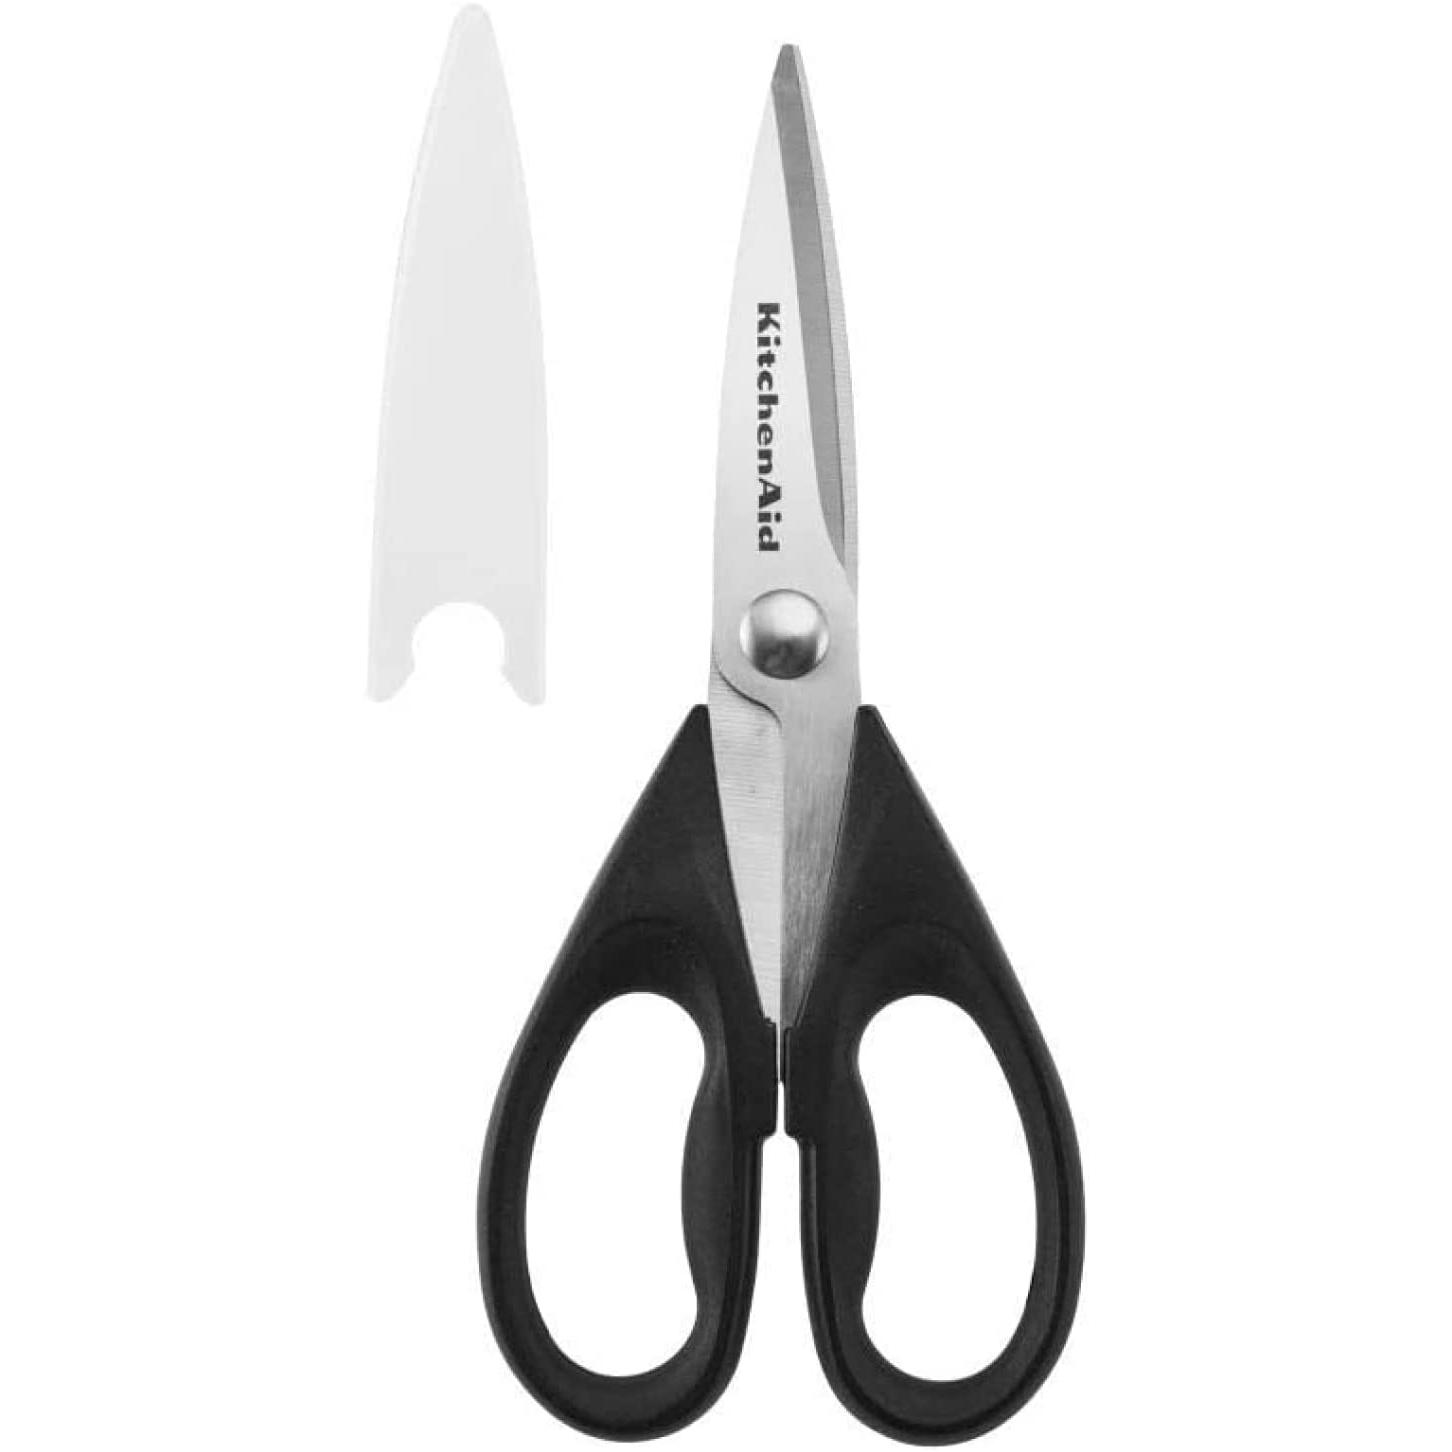 KitchenAid All Purpose Utility Kitchen Shears Scissors for $6.11